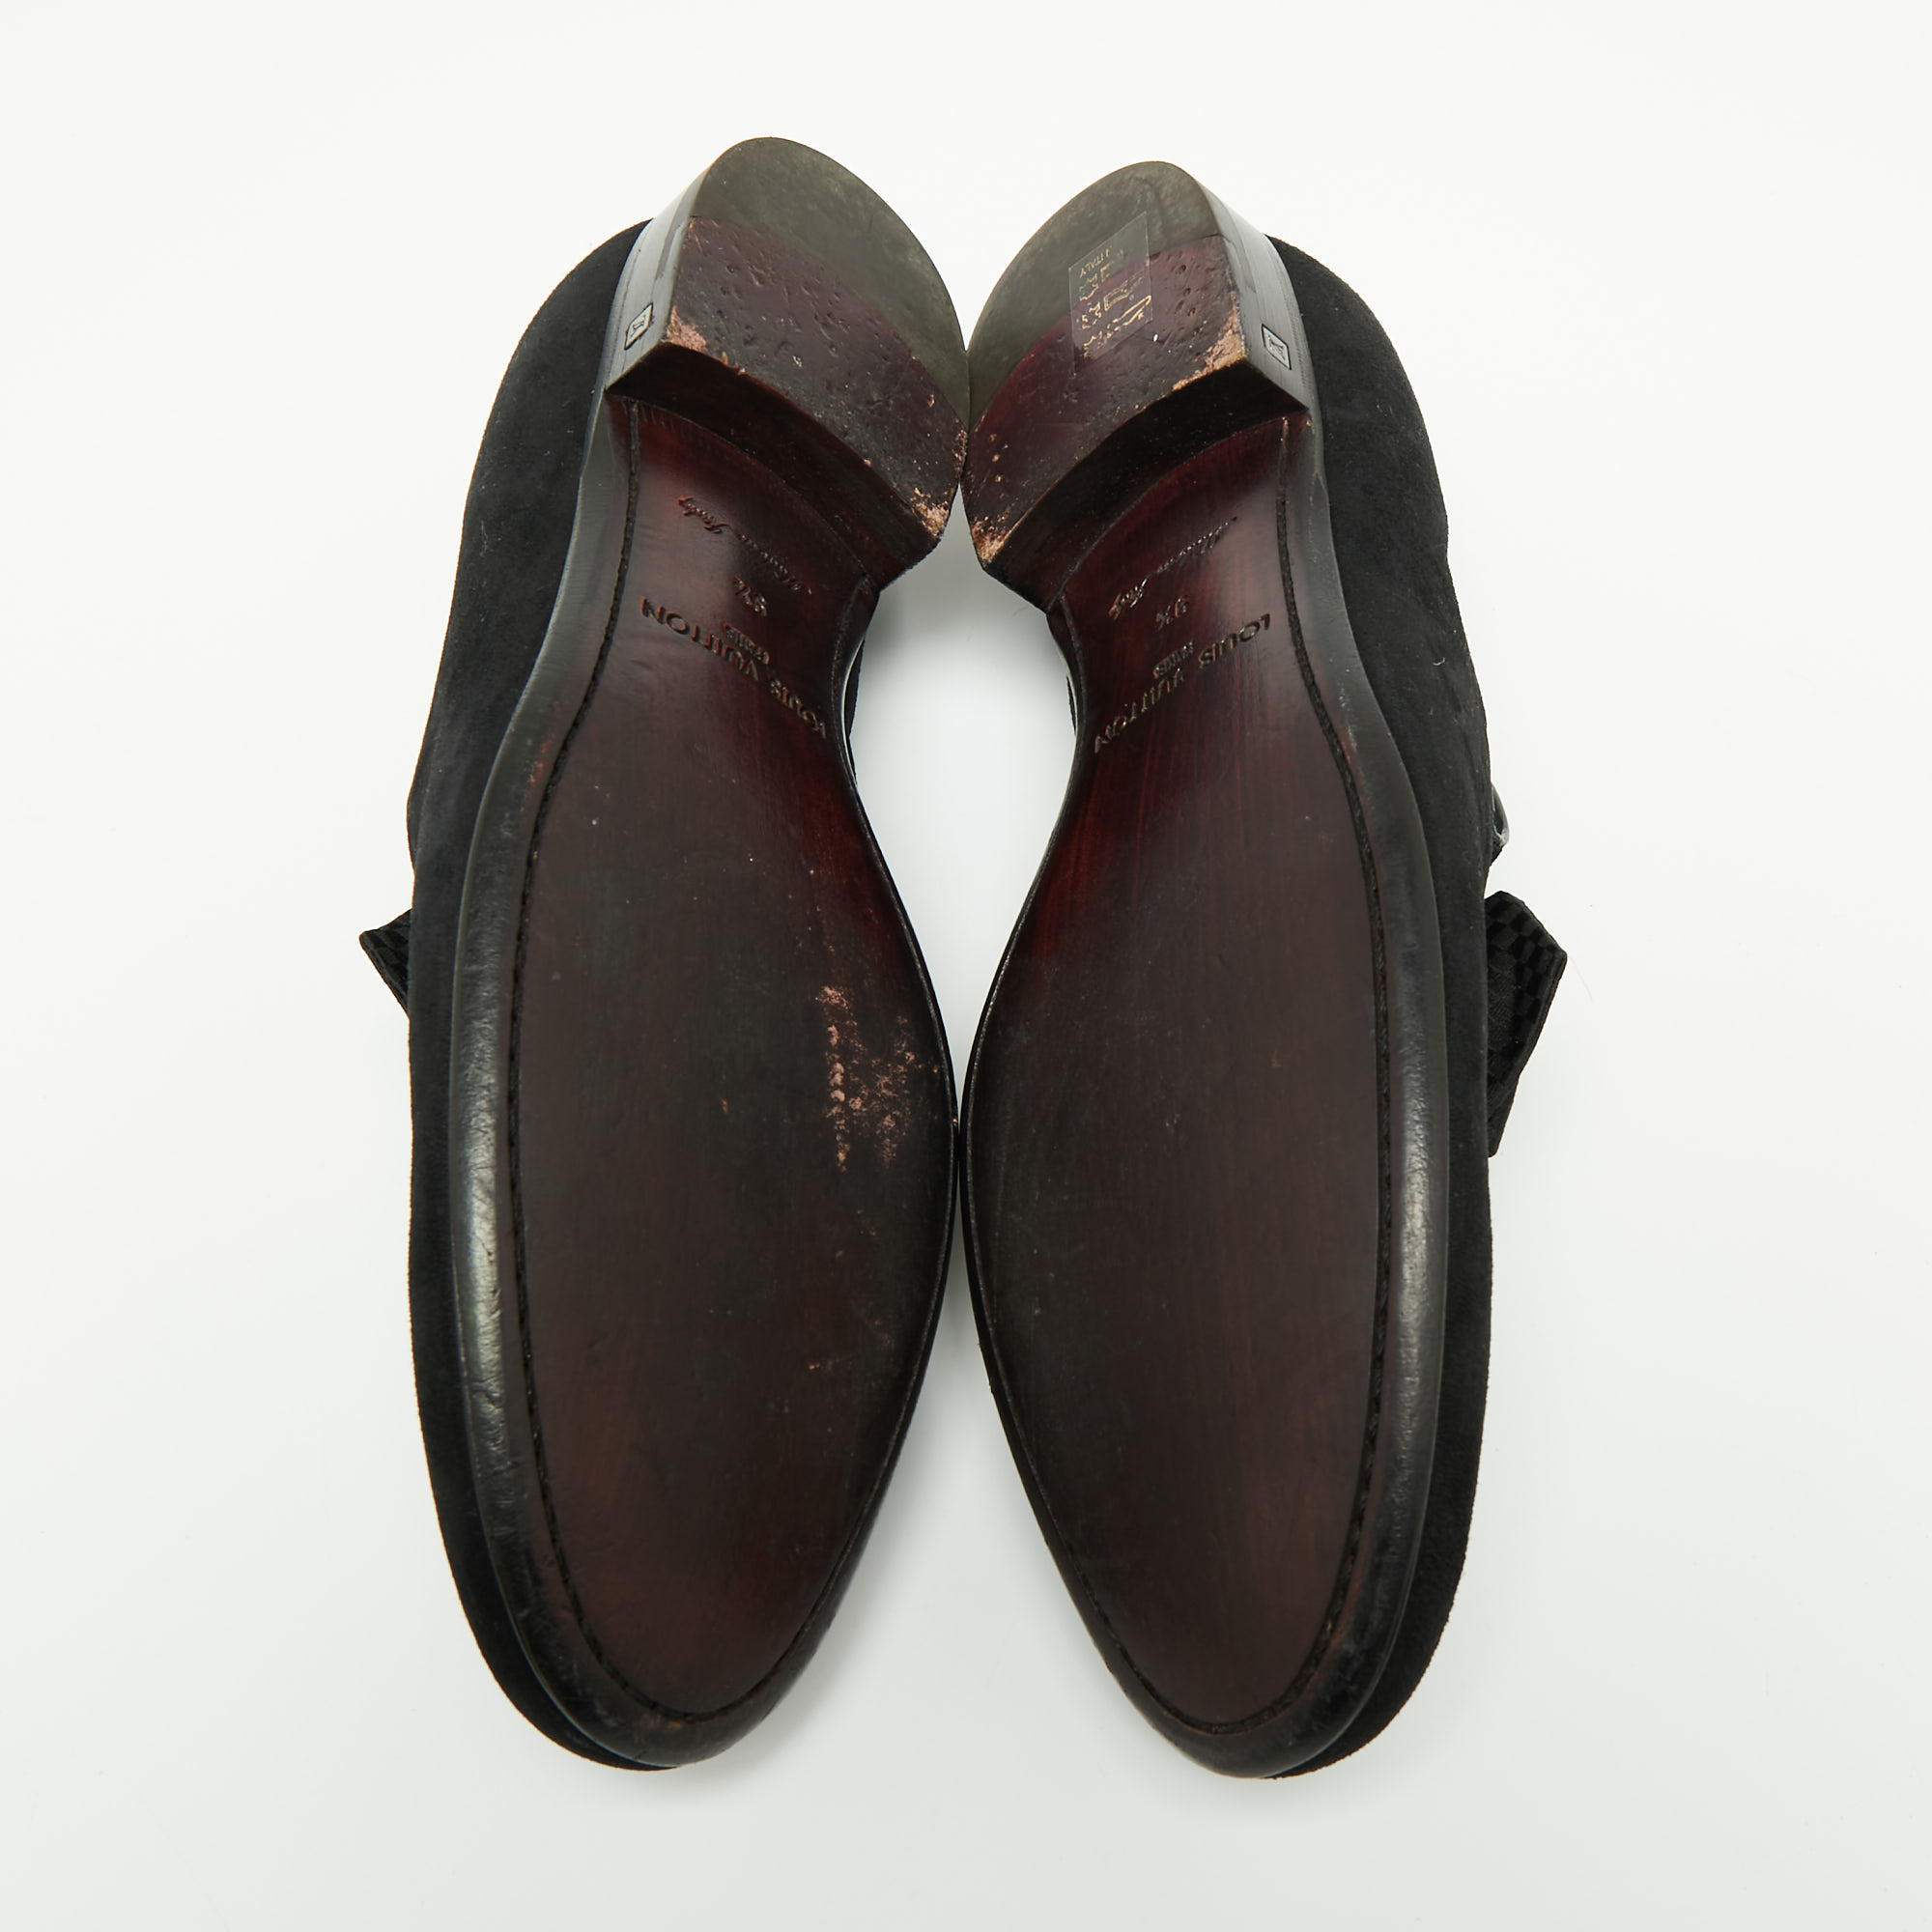 Louis Vuitton Black Suede Tuxedo Bow Smoking Slippers Size 43.5